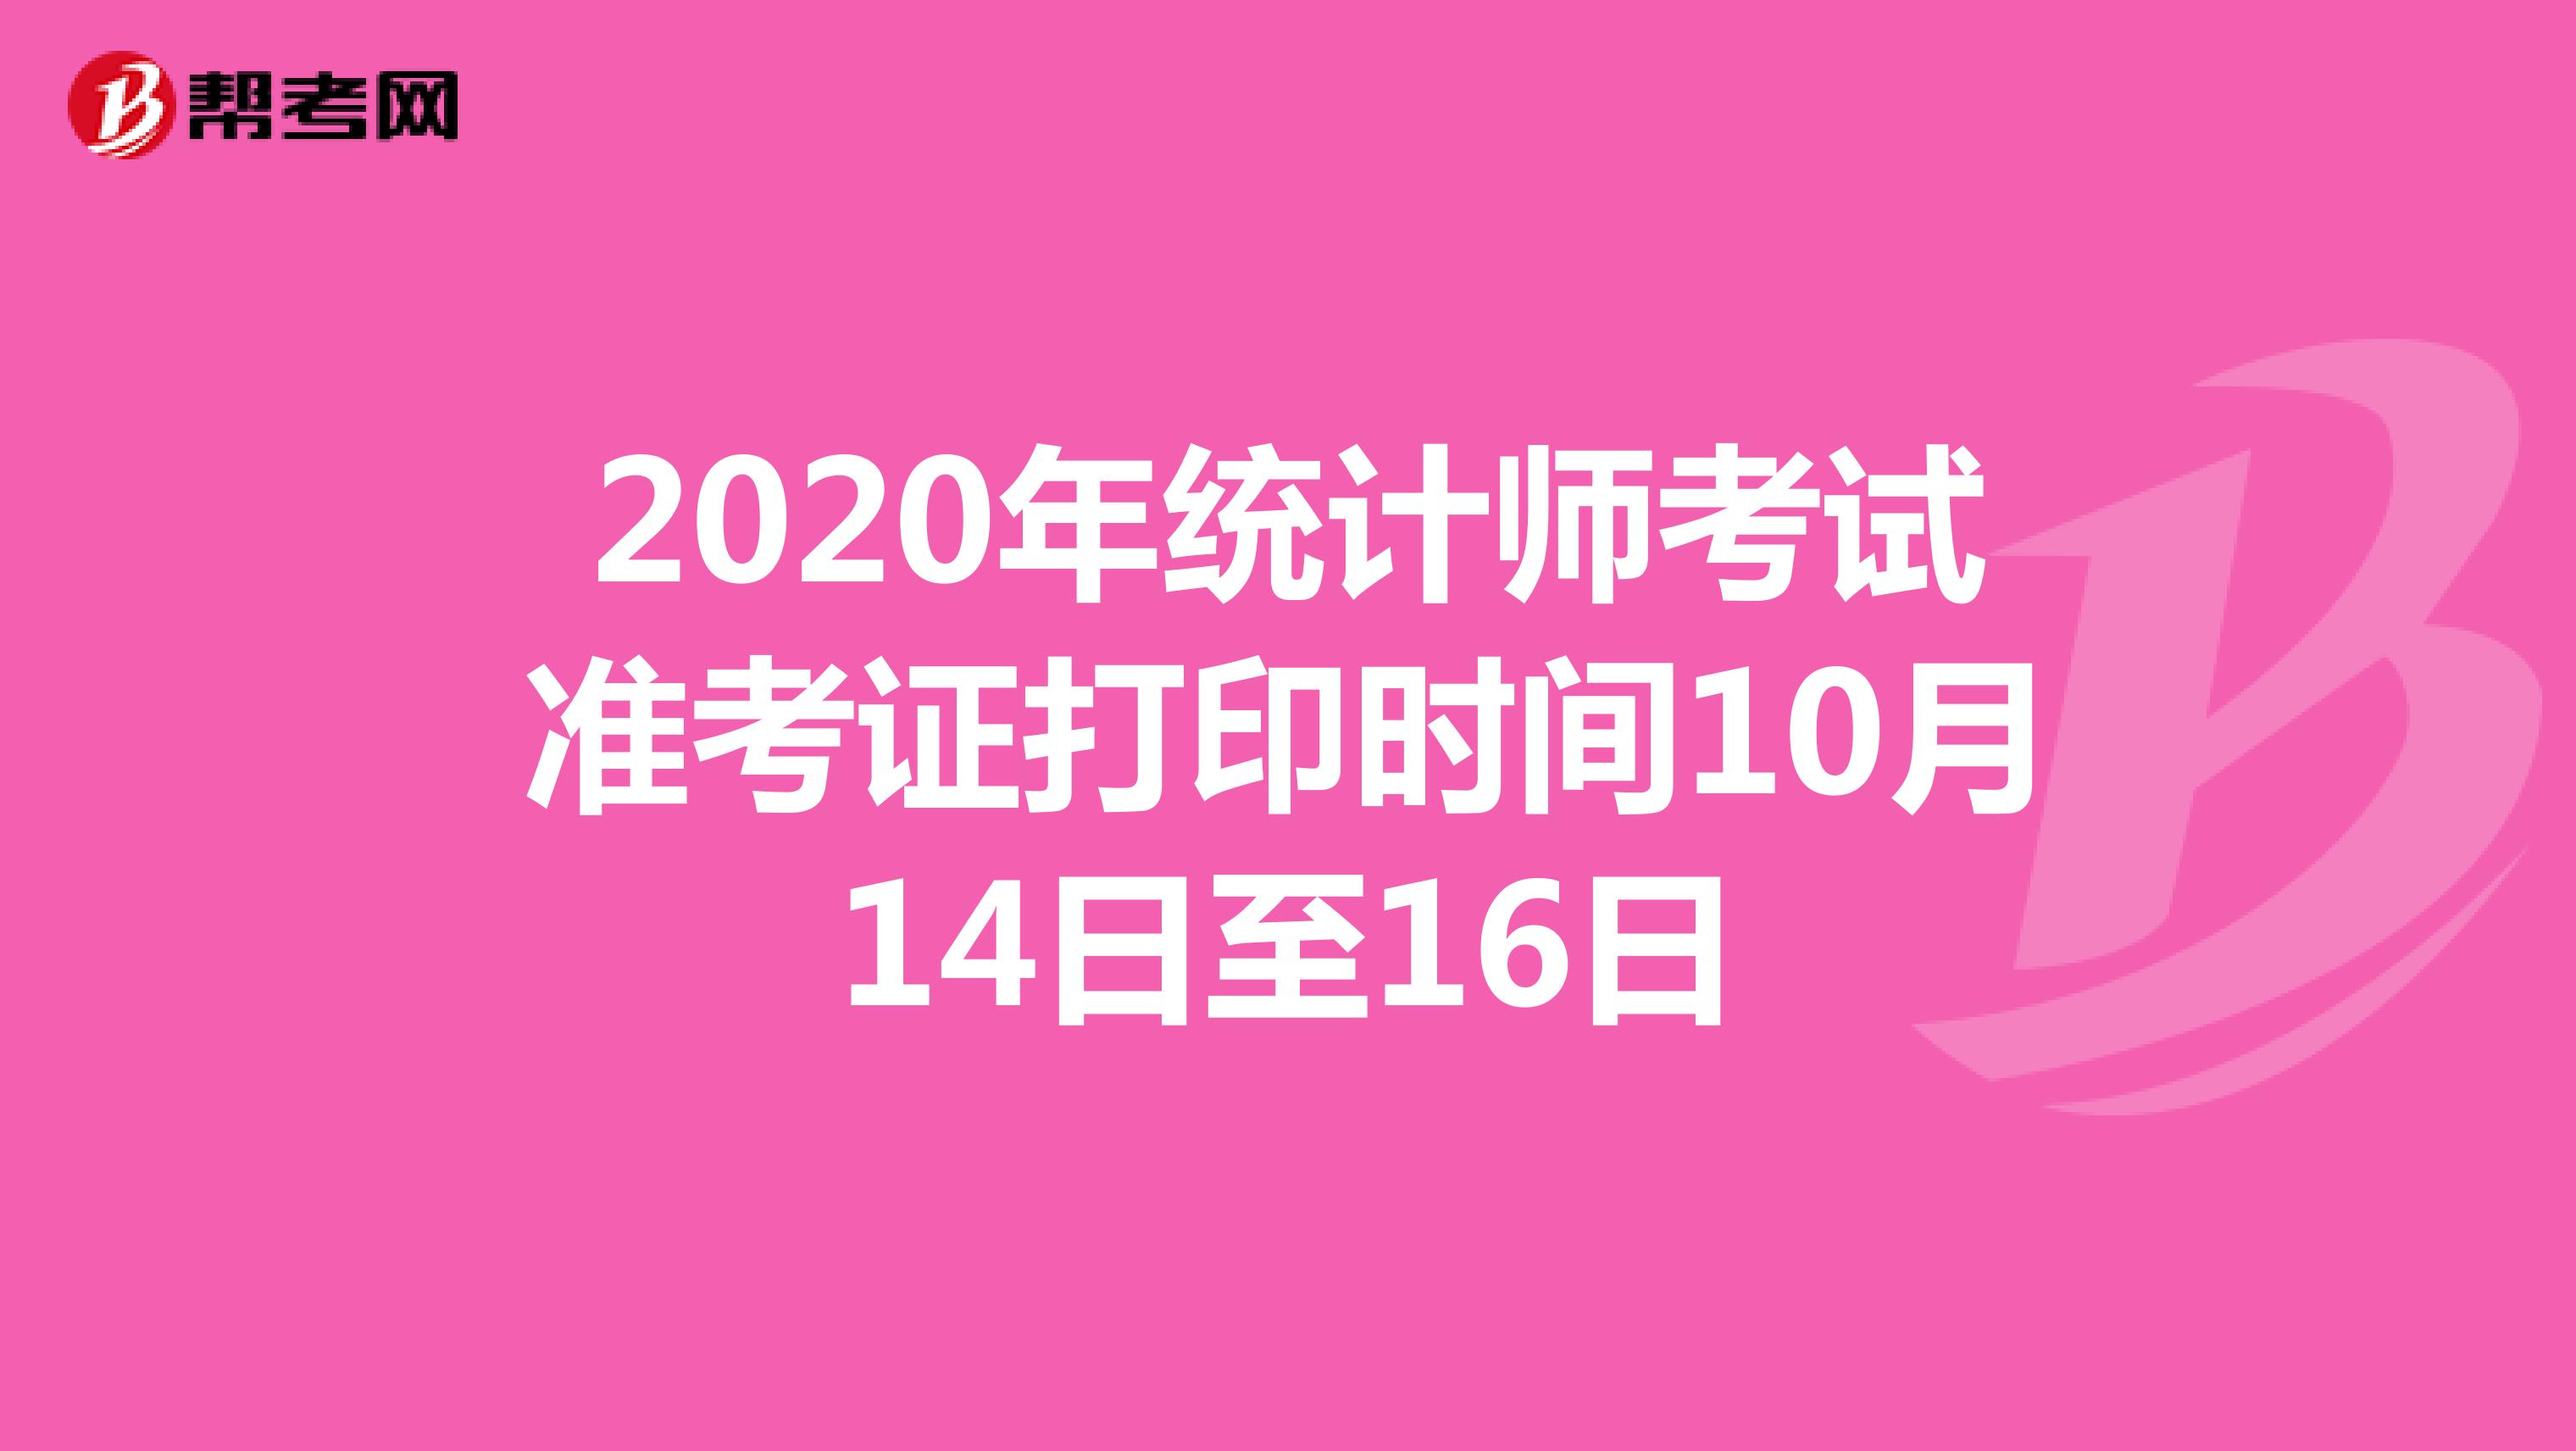 2020年天津统计师考试准考证打印时间10月14日至16日